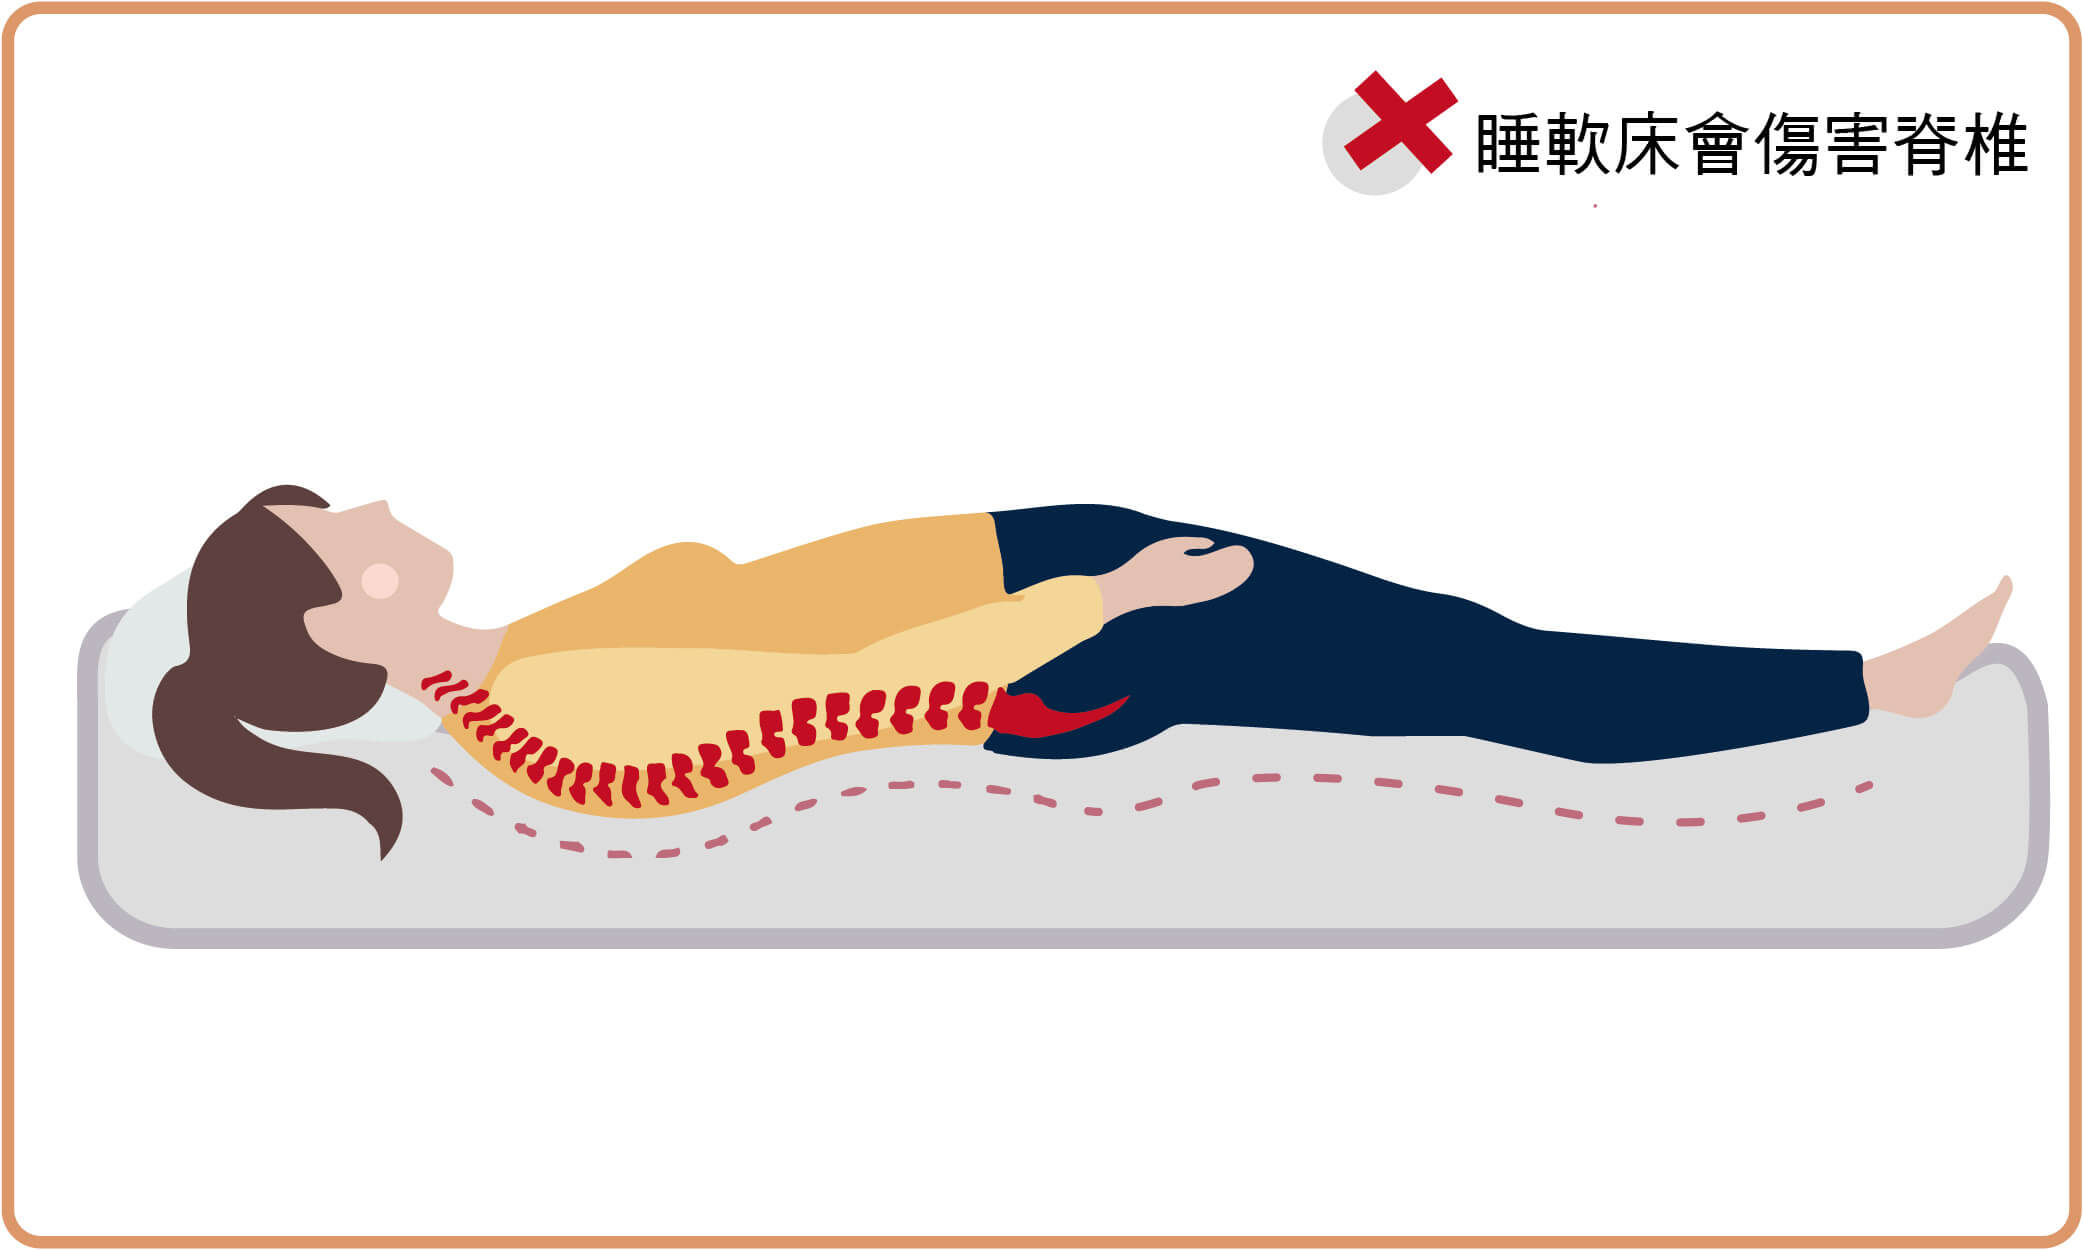 駝背睡太軟的床墊會傷害脊椎